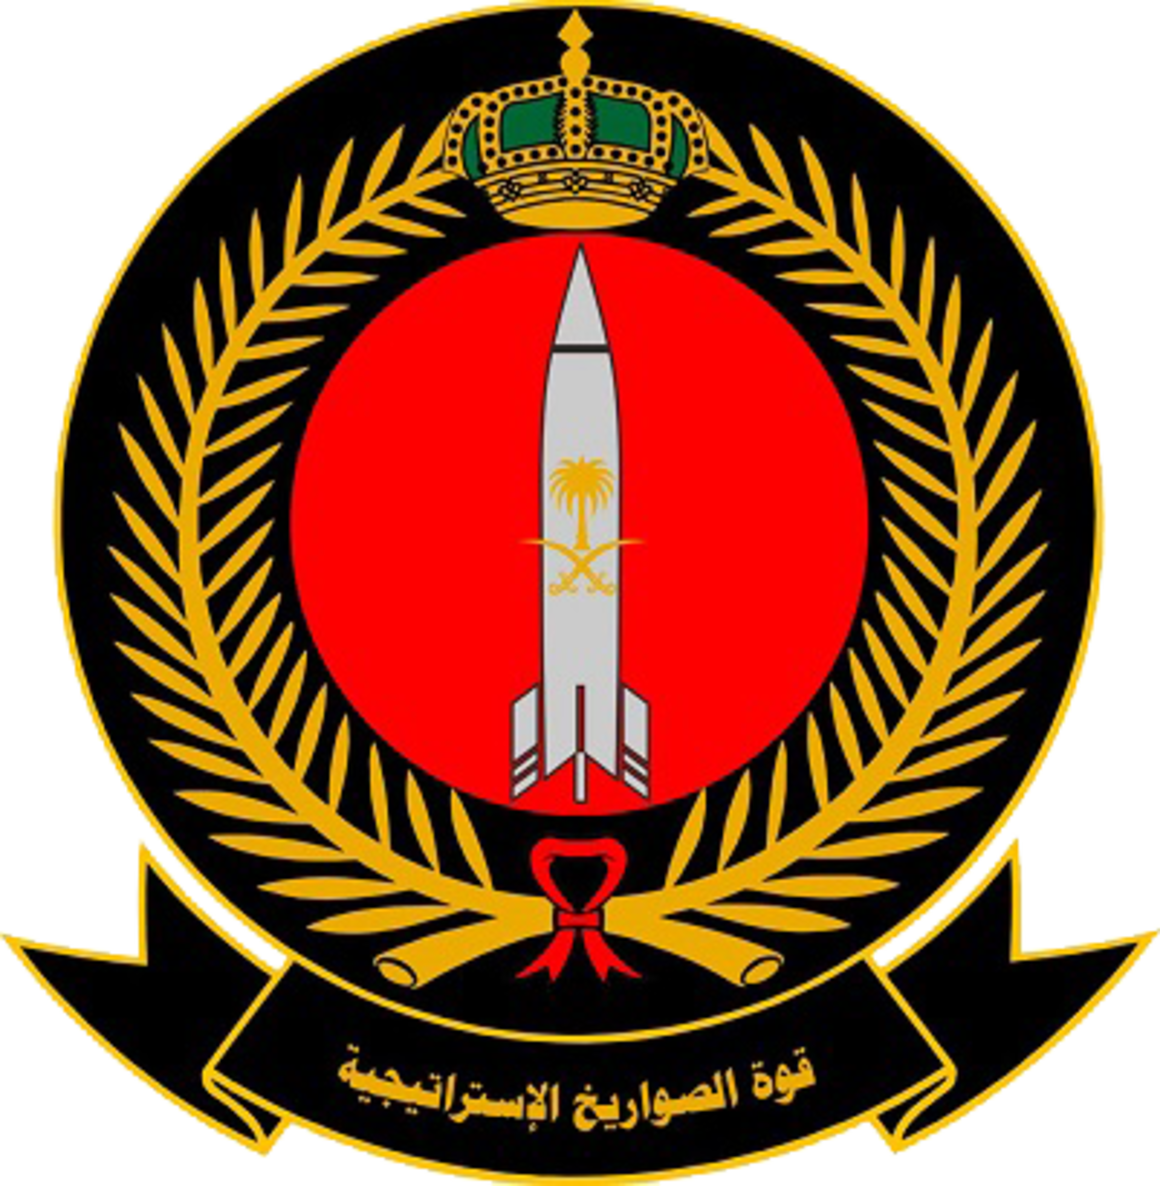 ملف Royal Saudi Strategic Missile Force Emblem Png ويكيبيديا